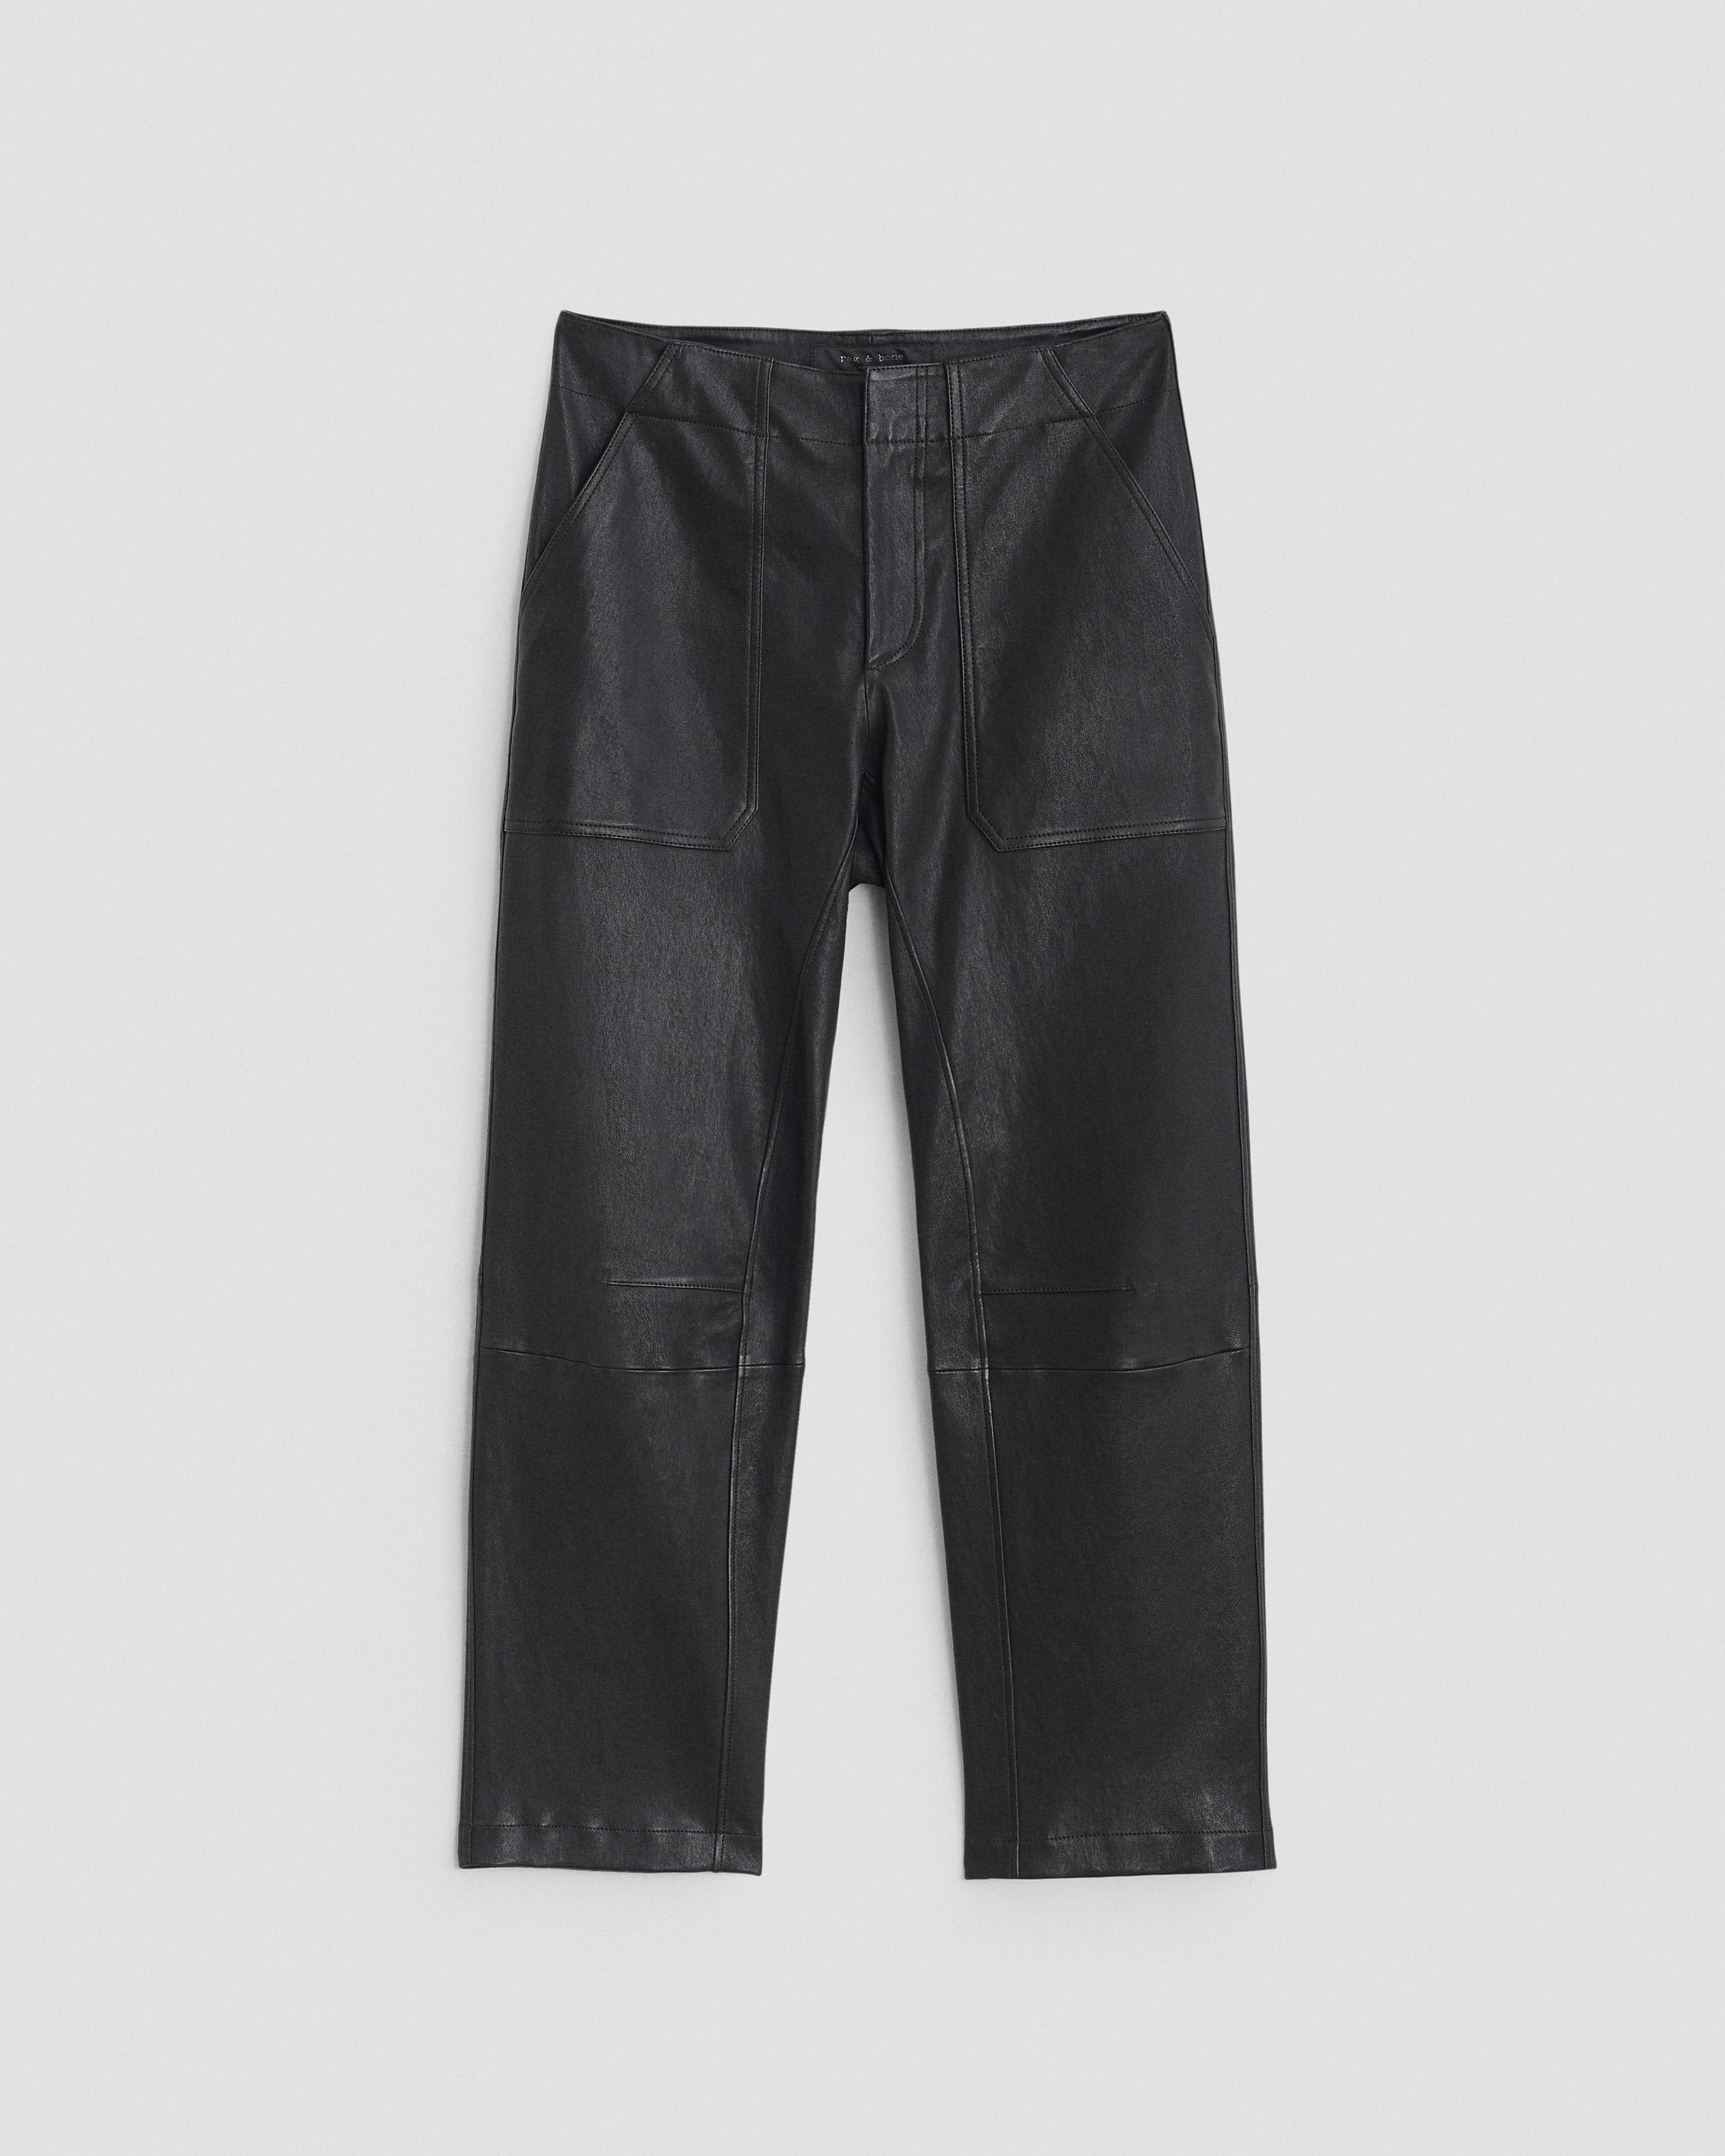 Leyton Workwear Leather Pant